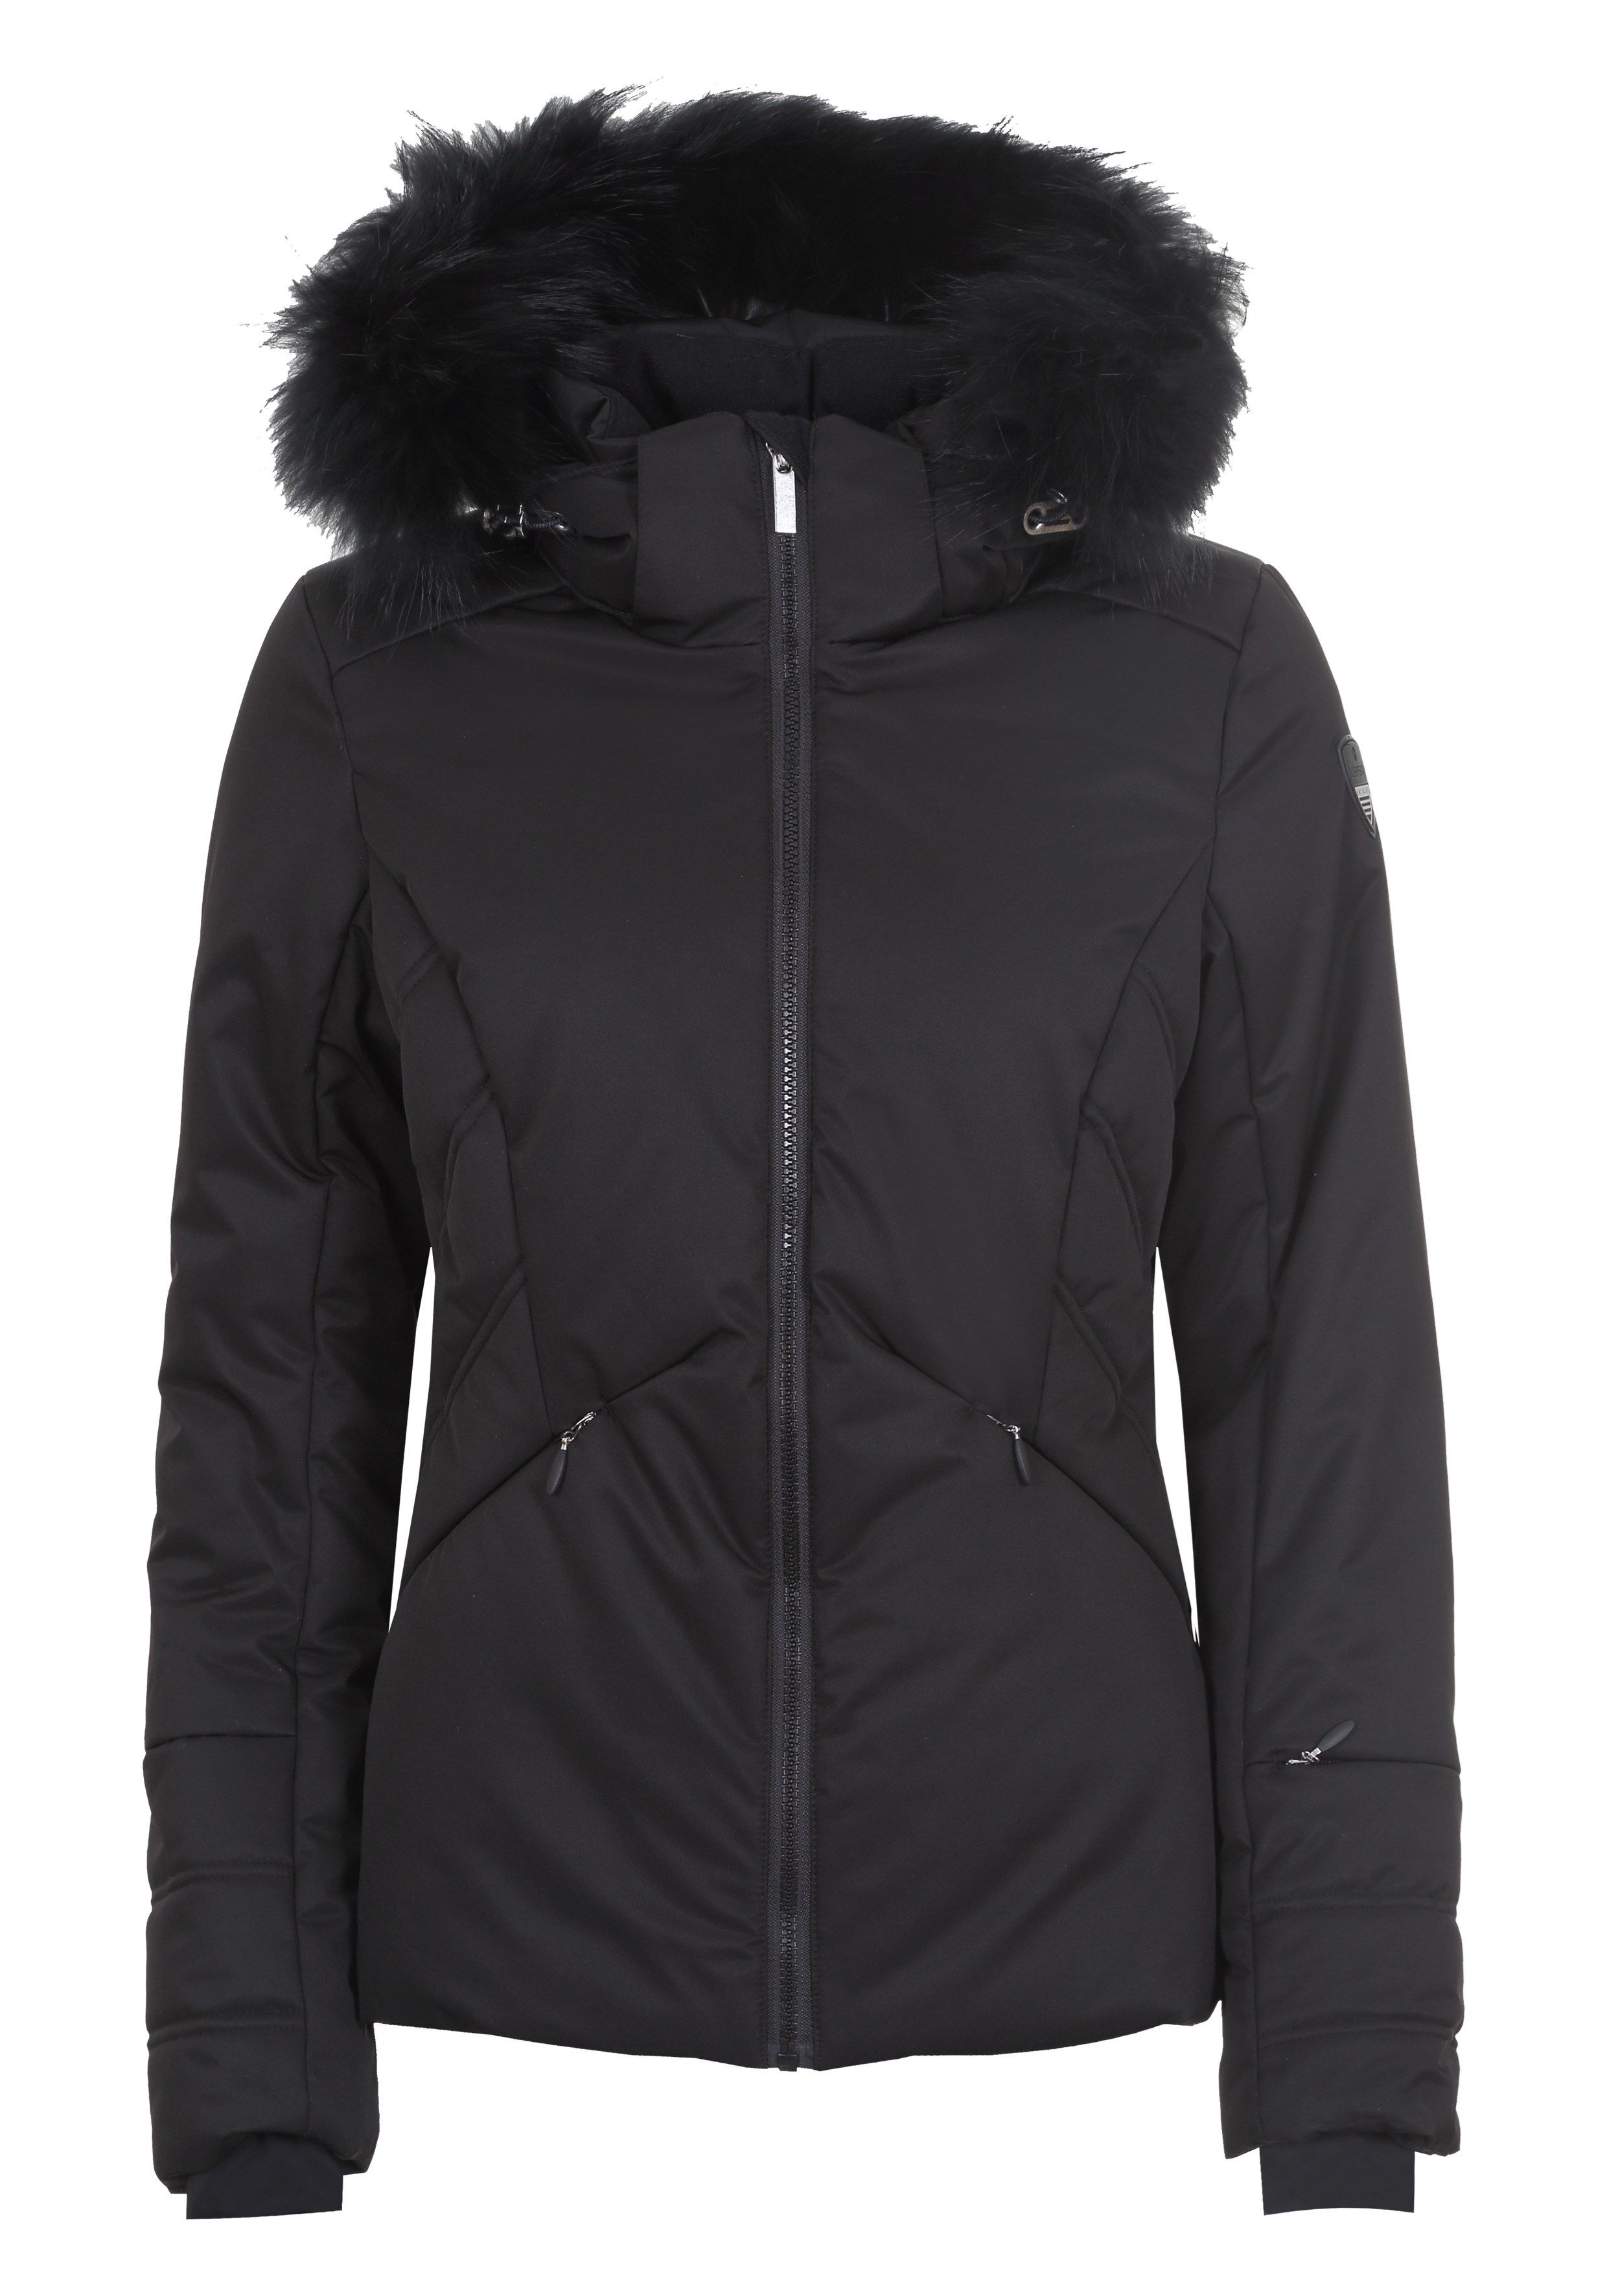 Dámská zimní bunda Icepeak Elloree IA s pravou kožešinou černá col. 990